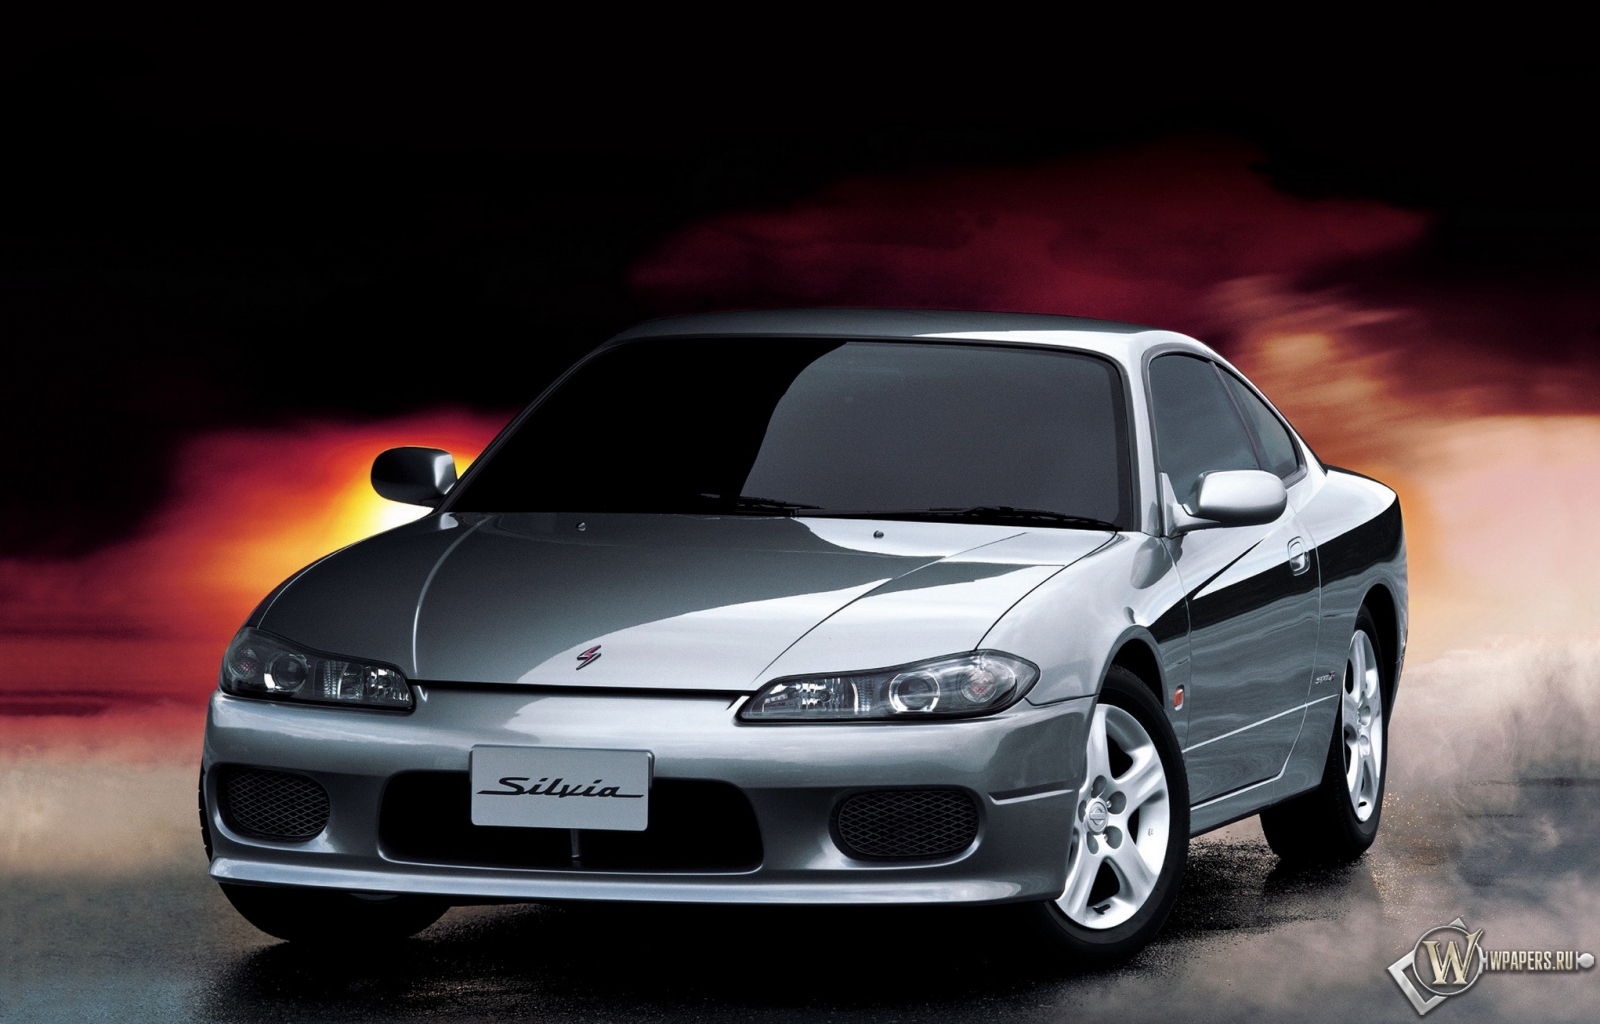 Nissan Silvia spec r 1600x1024